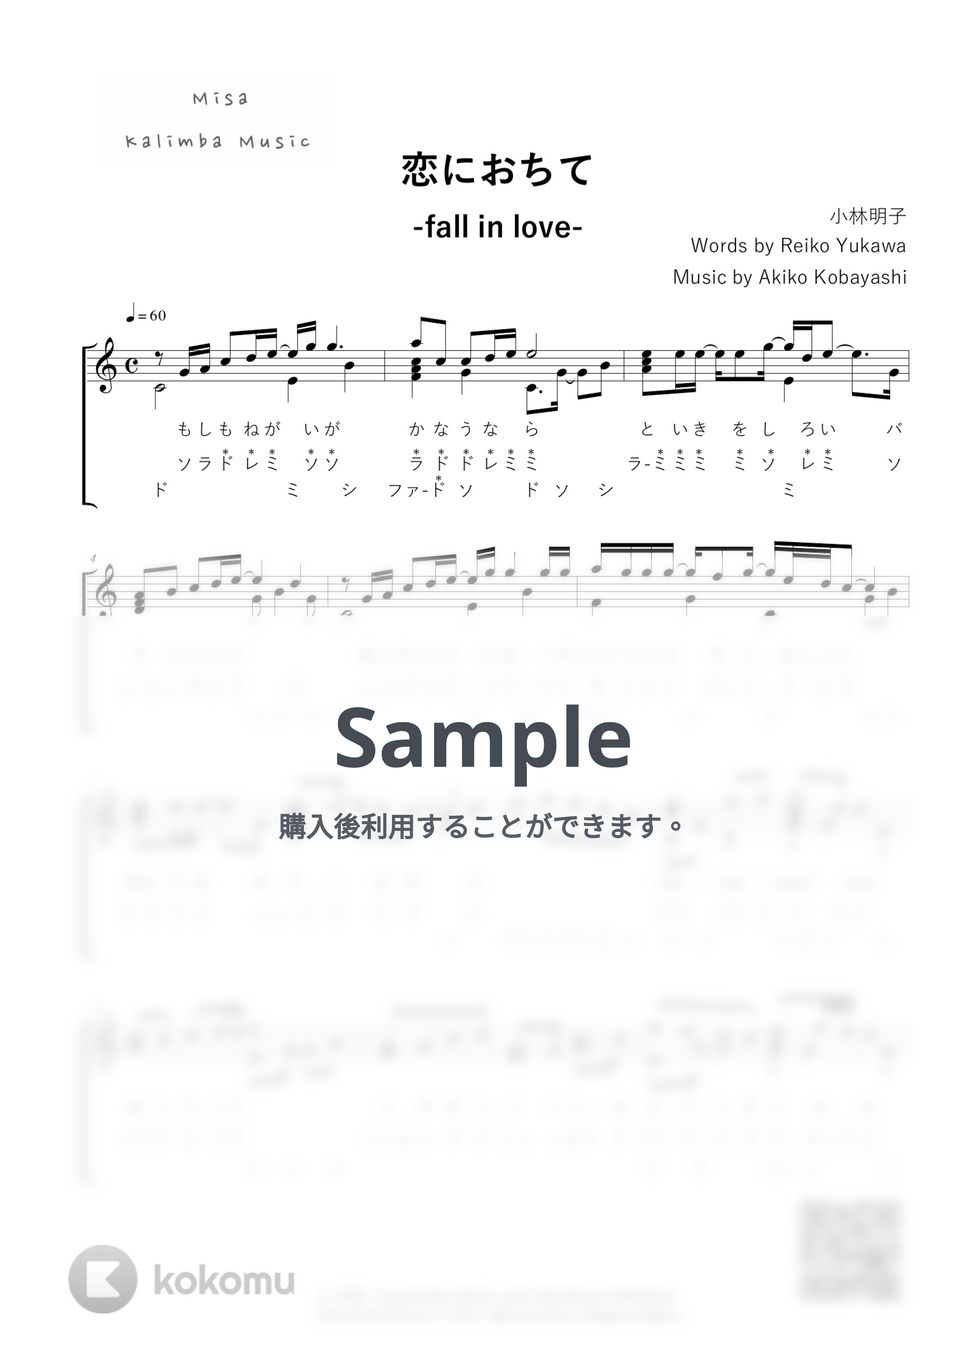 小林明子 - 恋におちて-Fall in love- / ドレミ表記 / 17音カリンバ (歌詞付き/ 模範演奏付き) by Misa / Kalimba Music